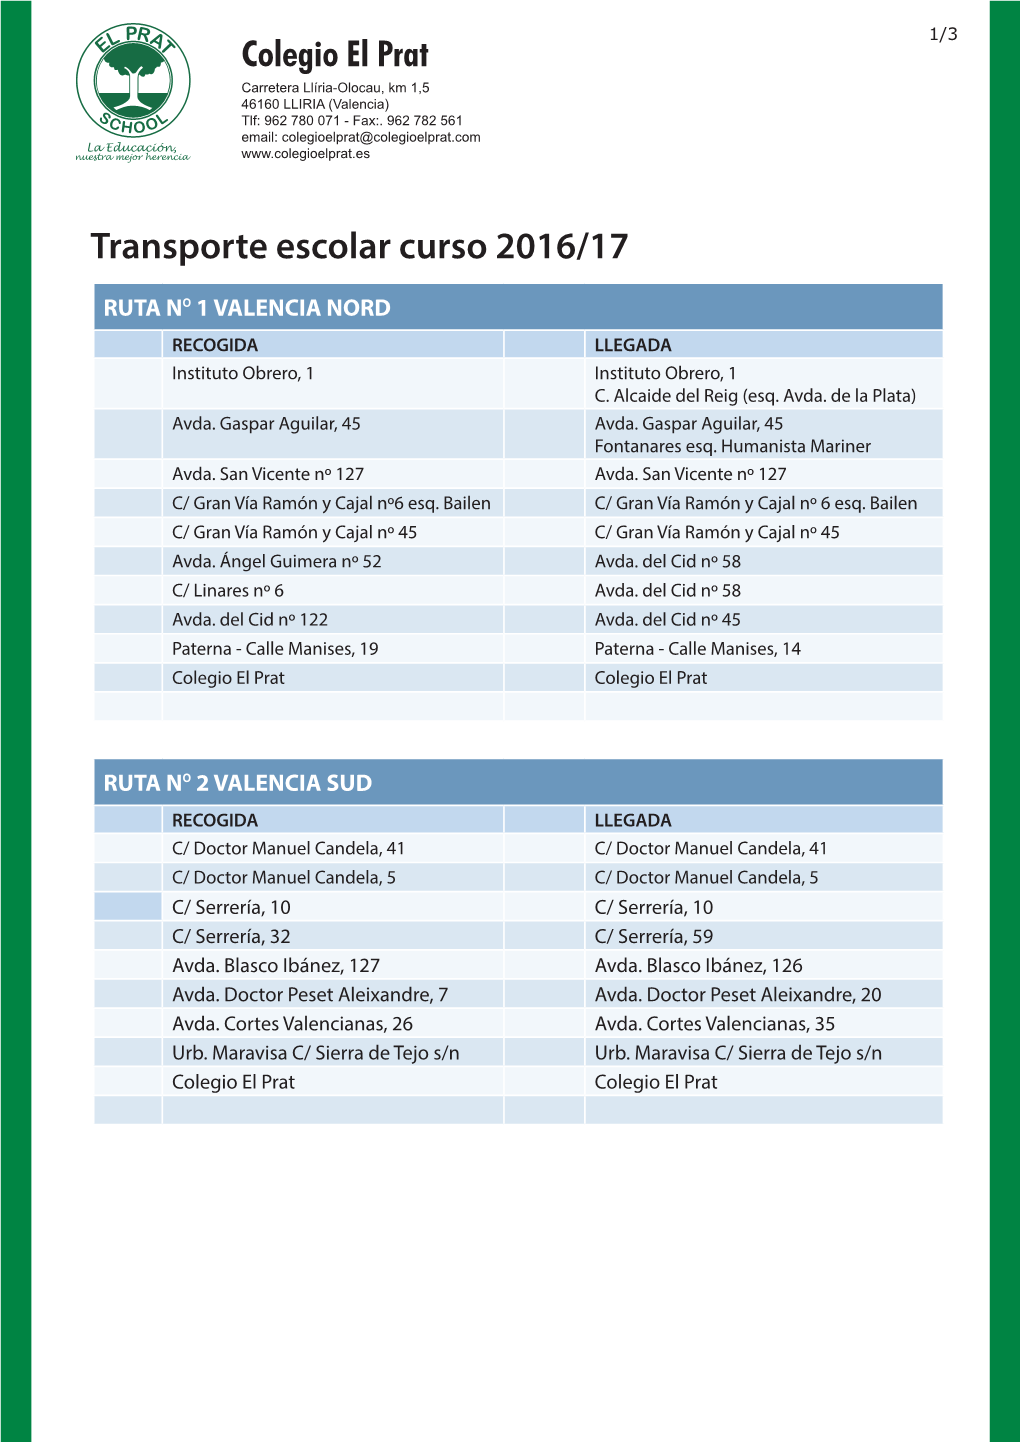 Transporte Escolar Curso 2016/17